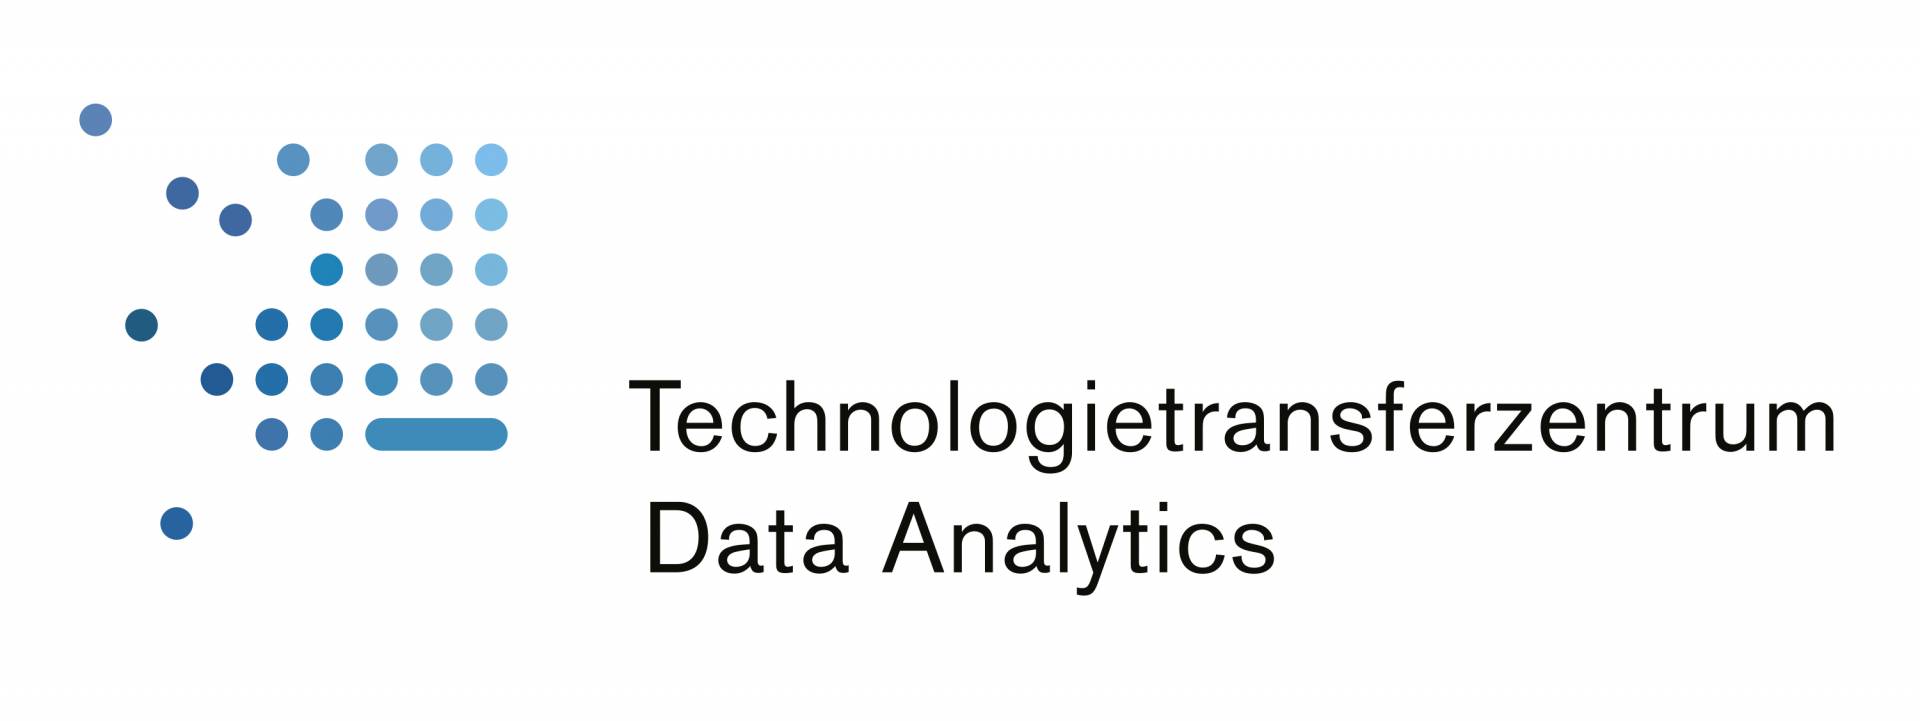 TTZ Data Analytics